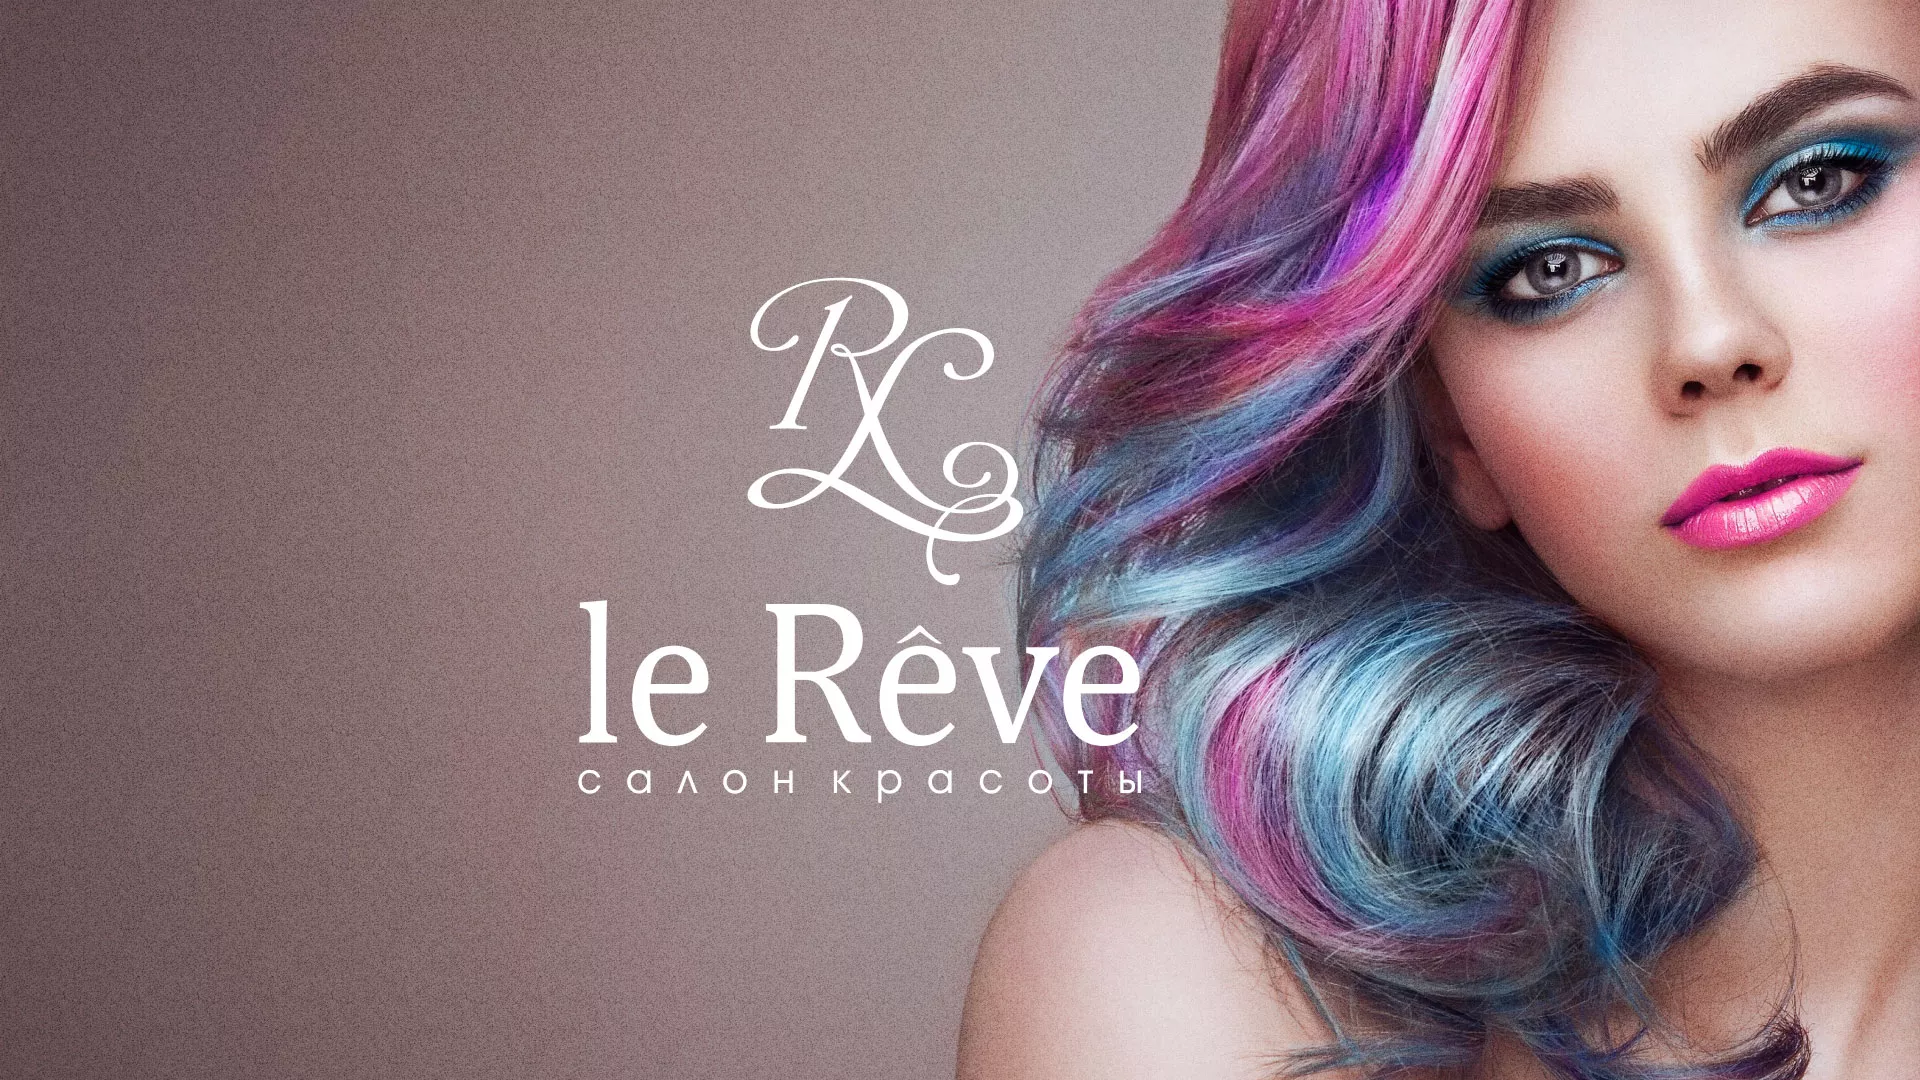 Создание сайта для салона красоты «Le Reve» в Махачкале